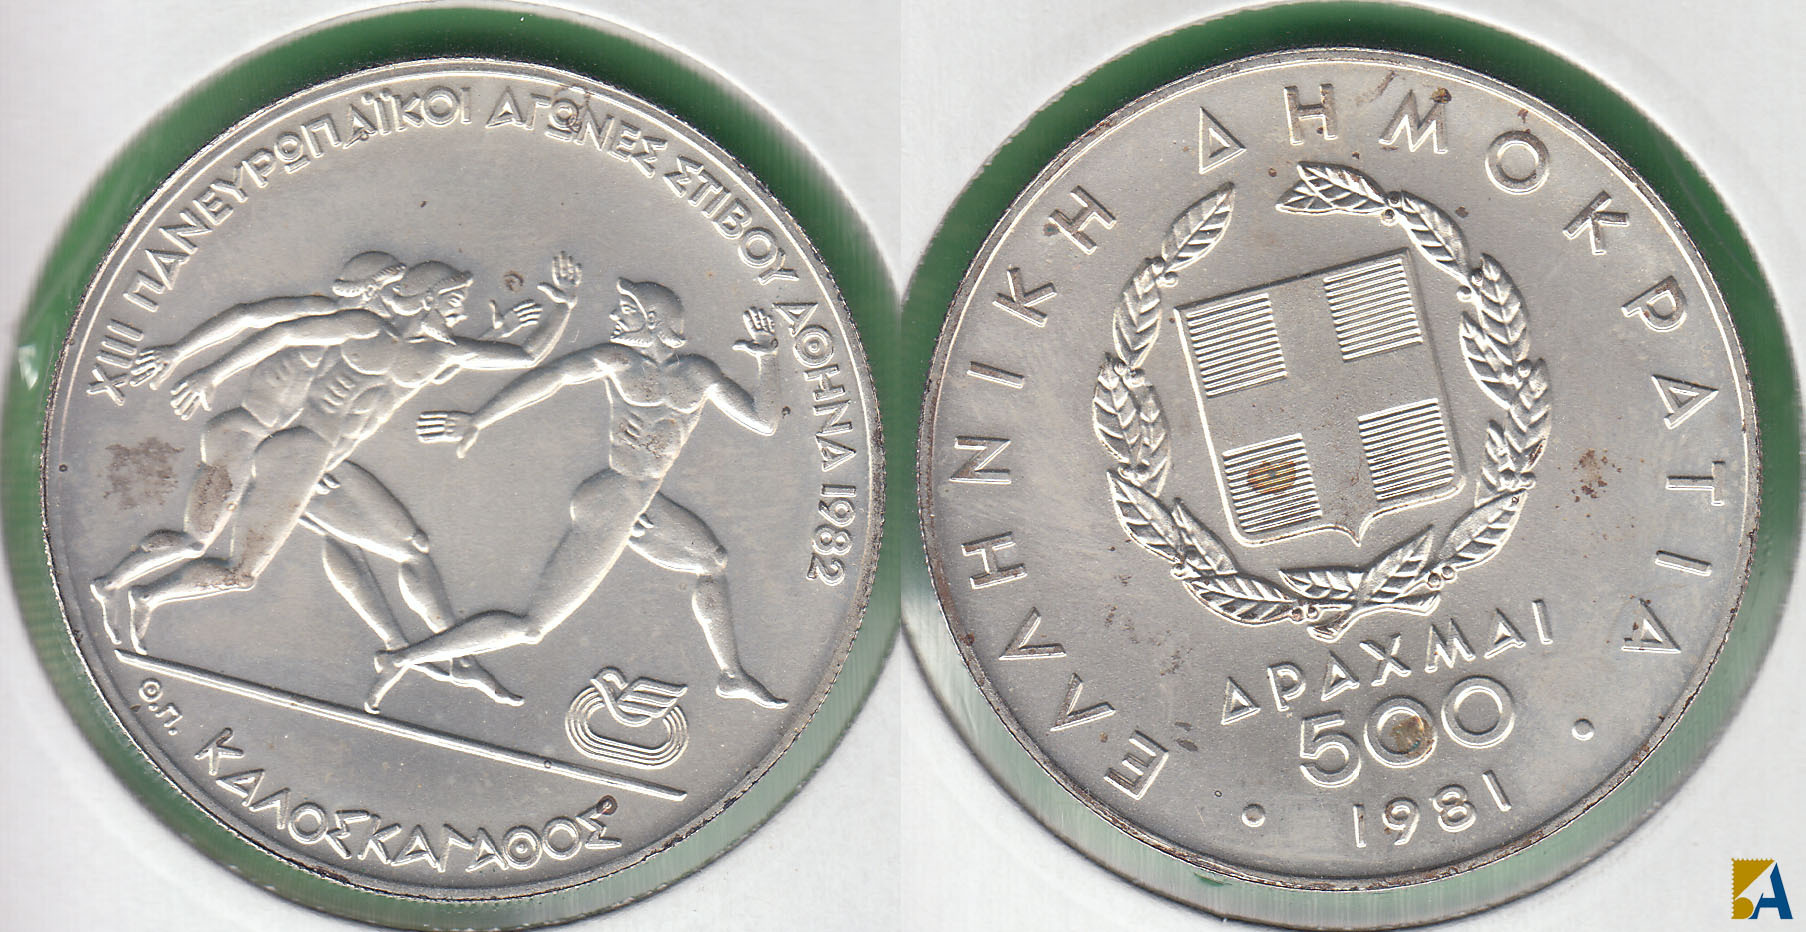 GRECIA - GREECE. 500 DRACMAS (DRACHMA) DE 1981. PLATA 0.900.